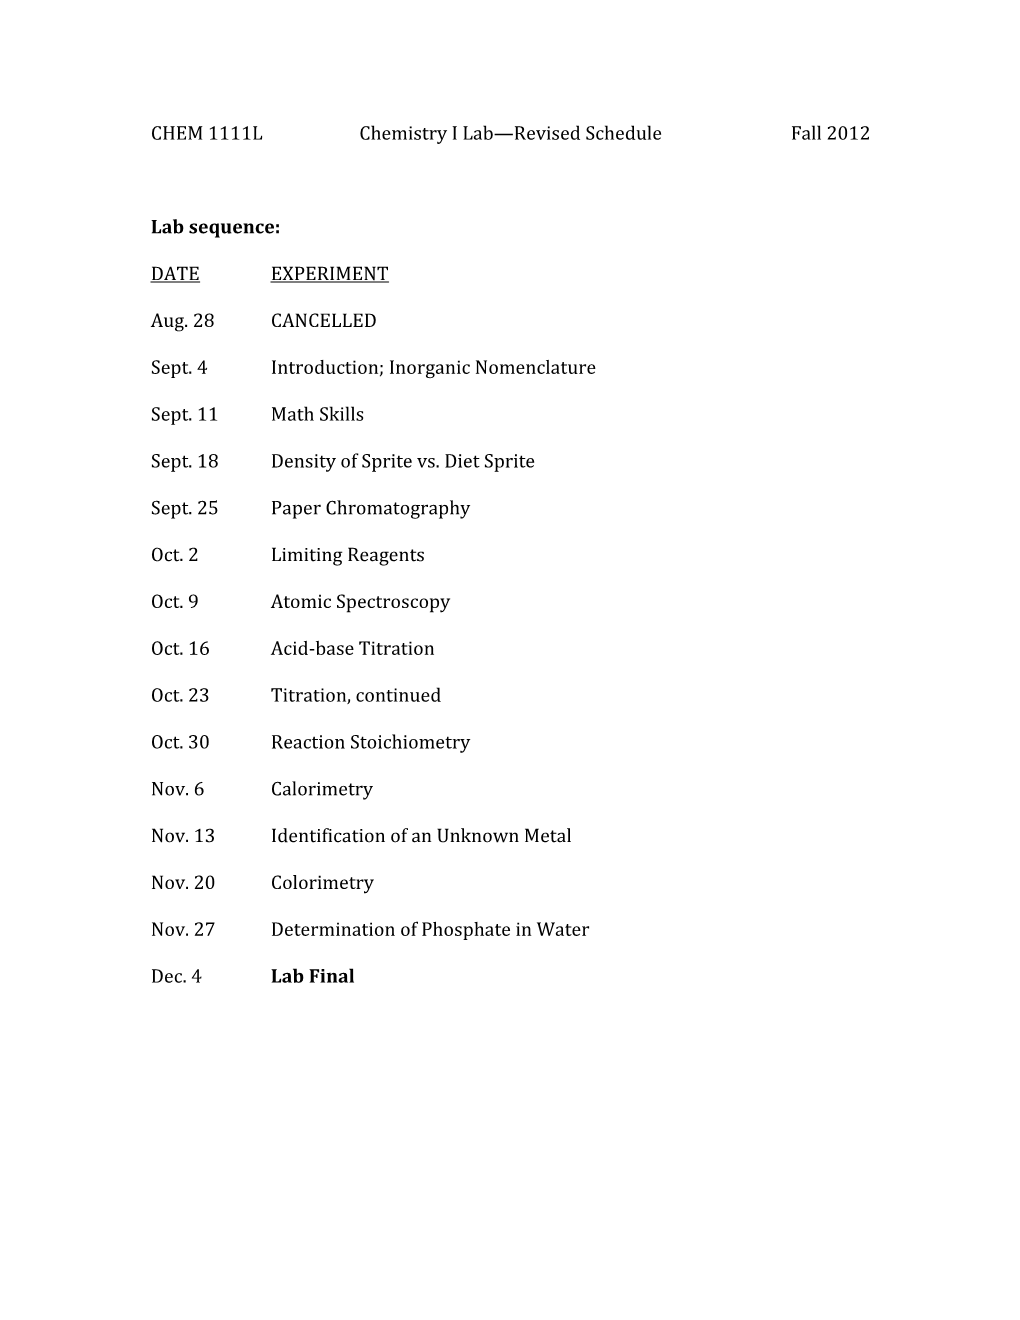 CHEM 1111Lchemistry I Lab Revised Schedulefall 2012